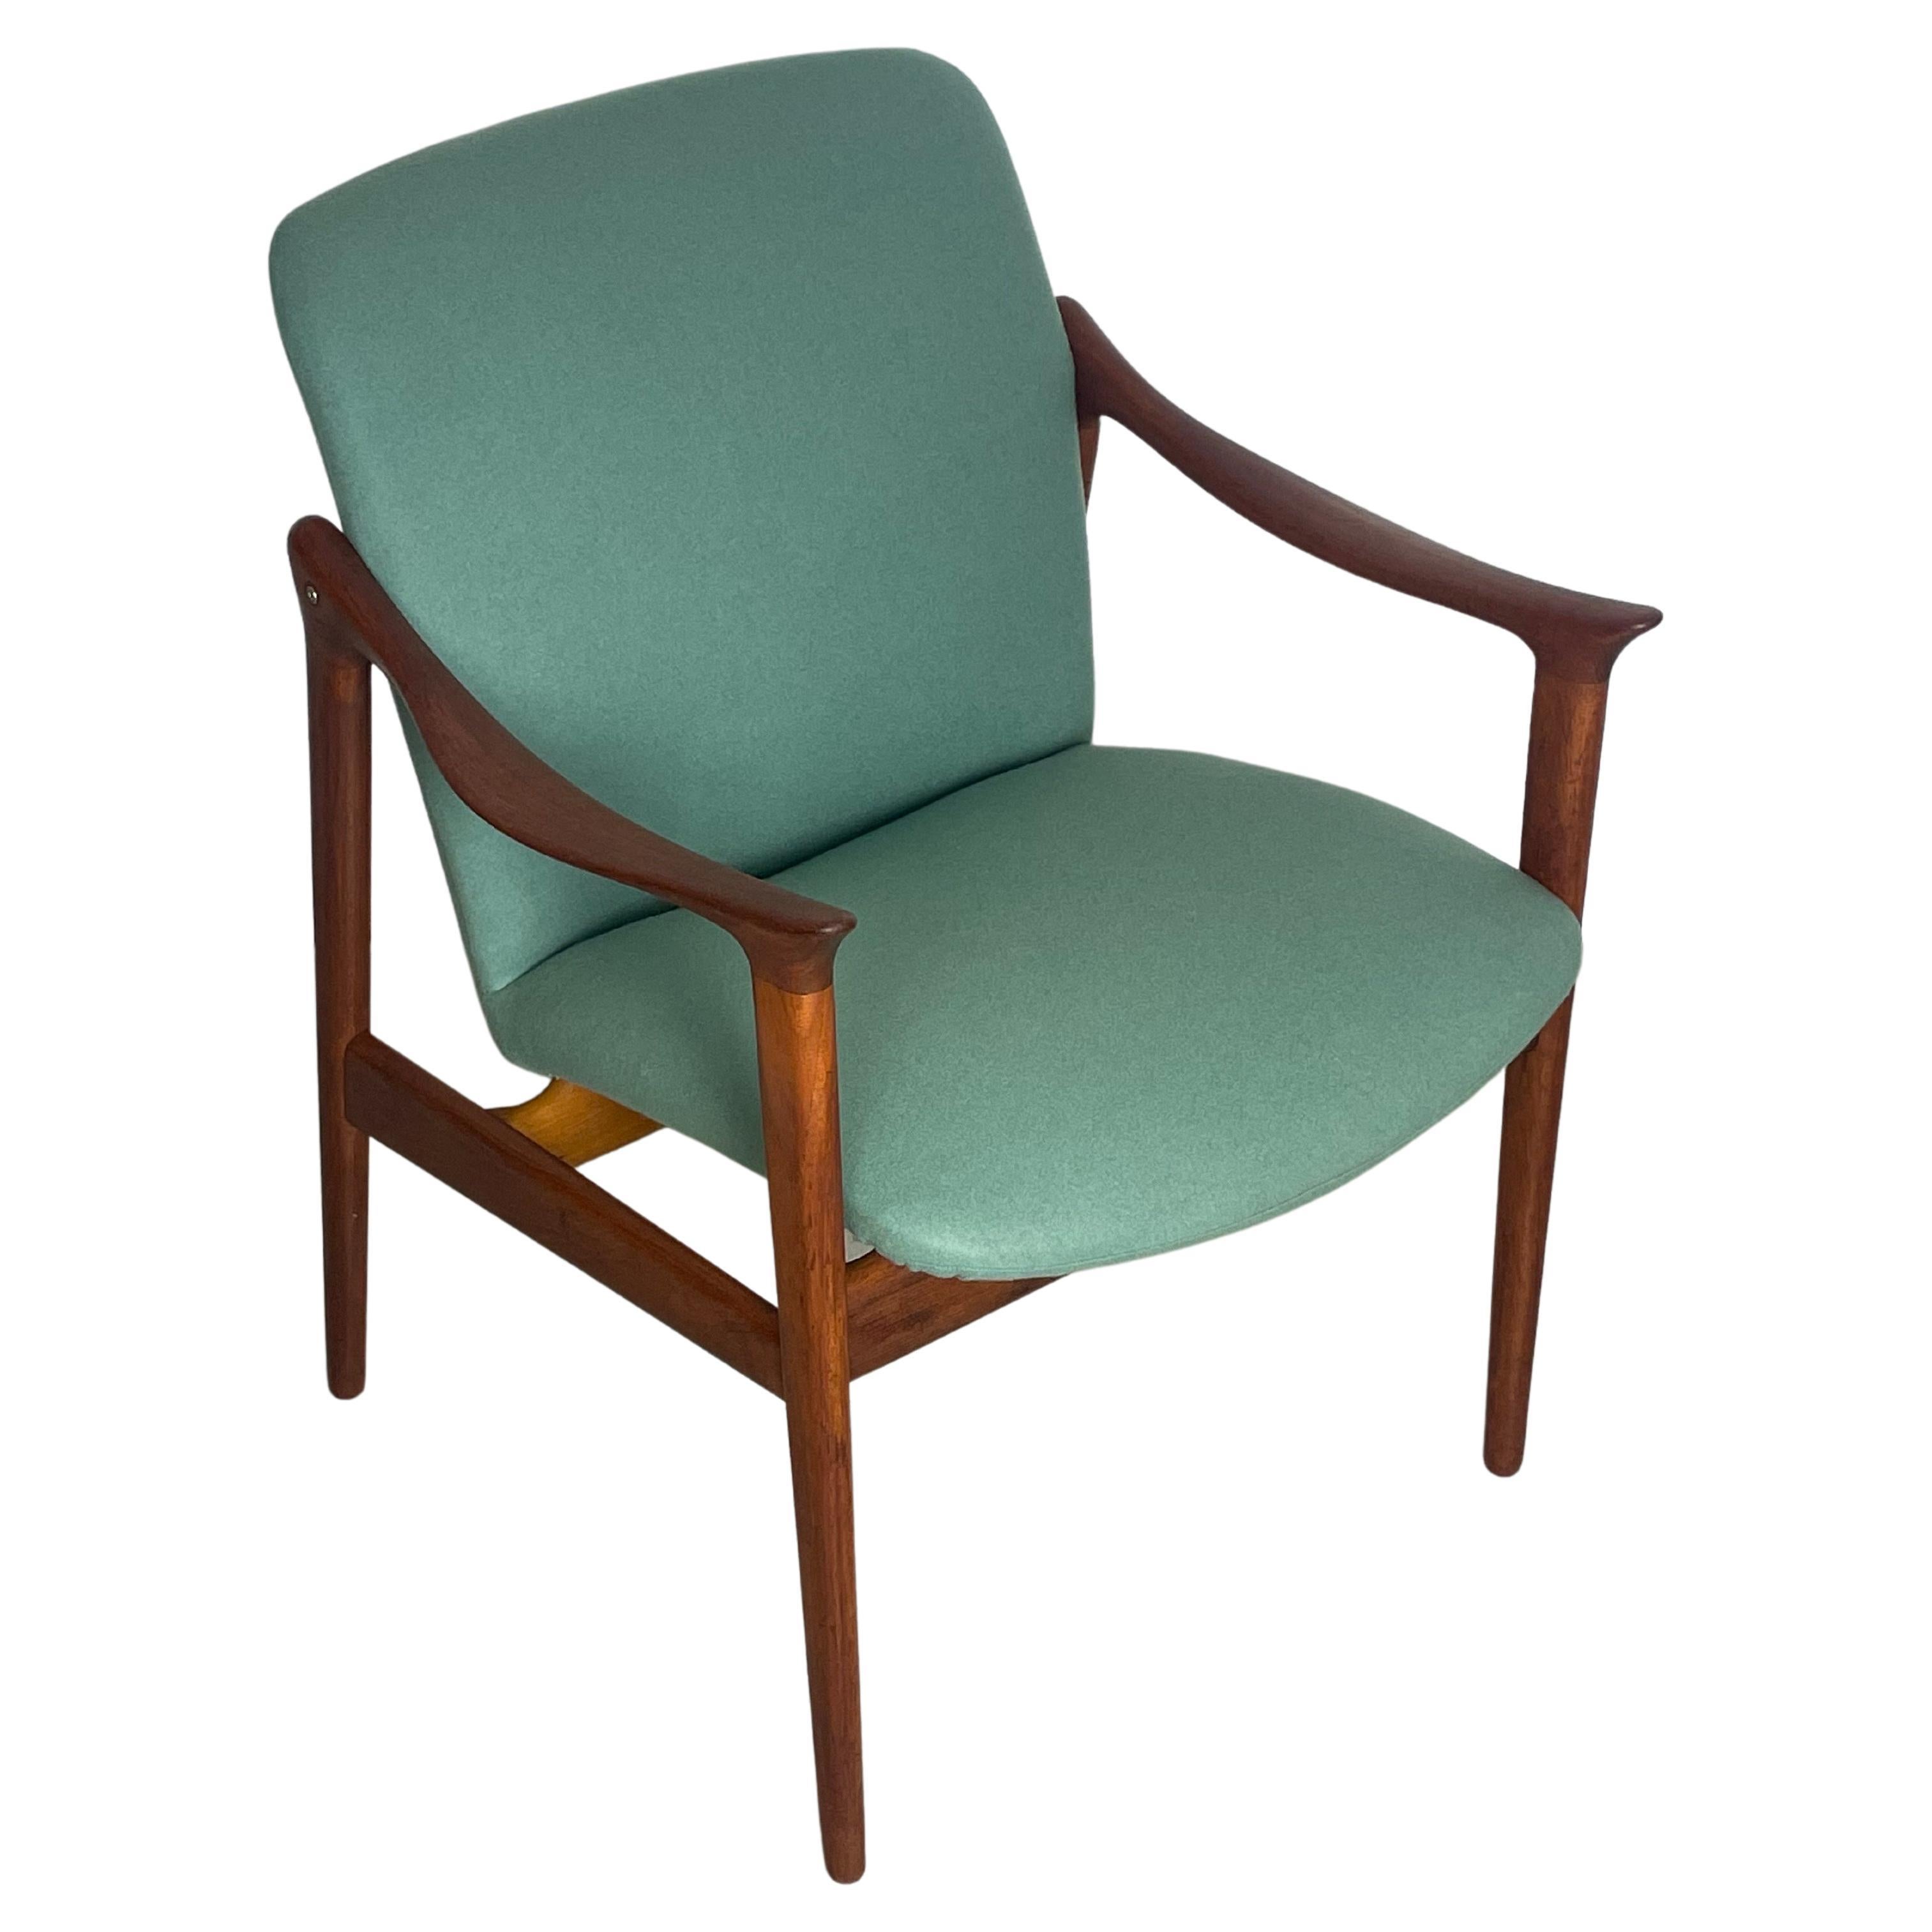 Un fauteuil en teck très rare, conçu par Fredrik A. Kayser. Fabriqué en Norvège dans les années 1950 par le fabricant de meubles Vatne Lenestolfabrikk. La chaise a été entièrement restaurée et dispose d'un nouveau rembourrage, recouvert d'un tissu